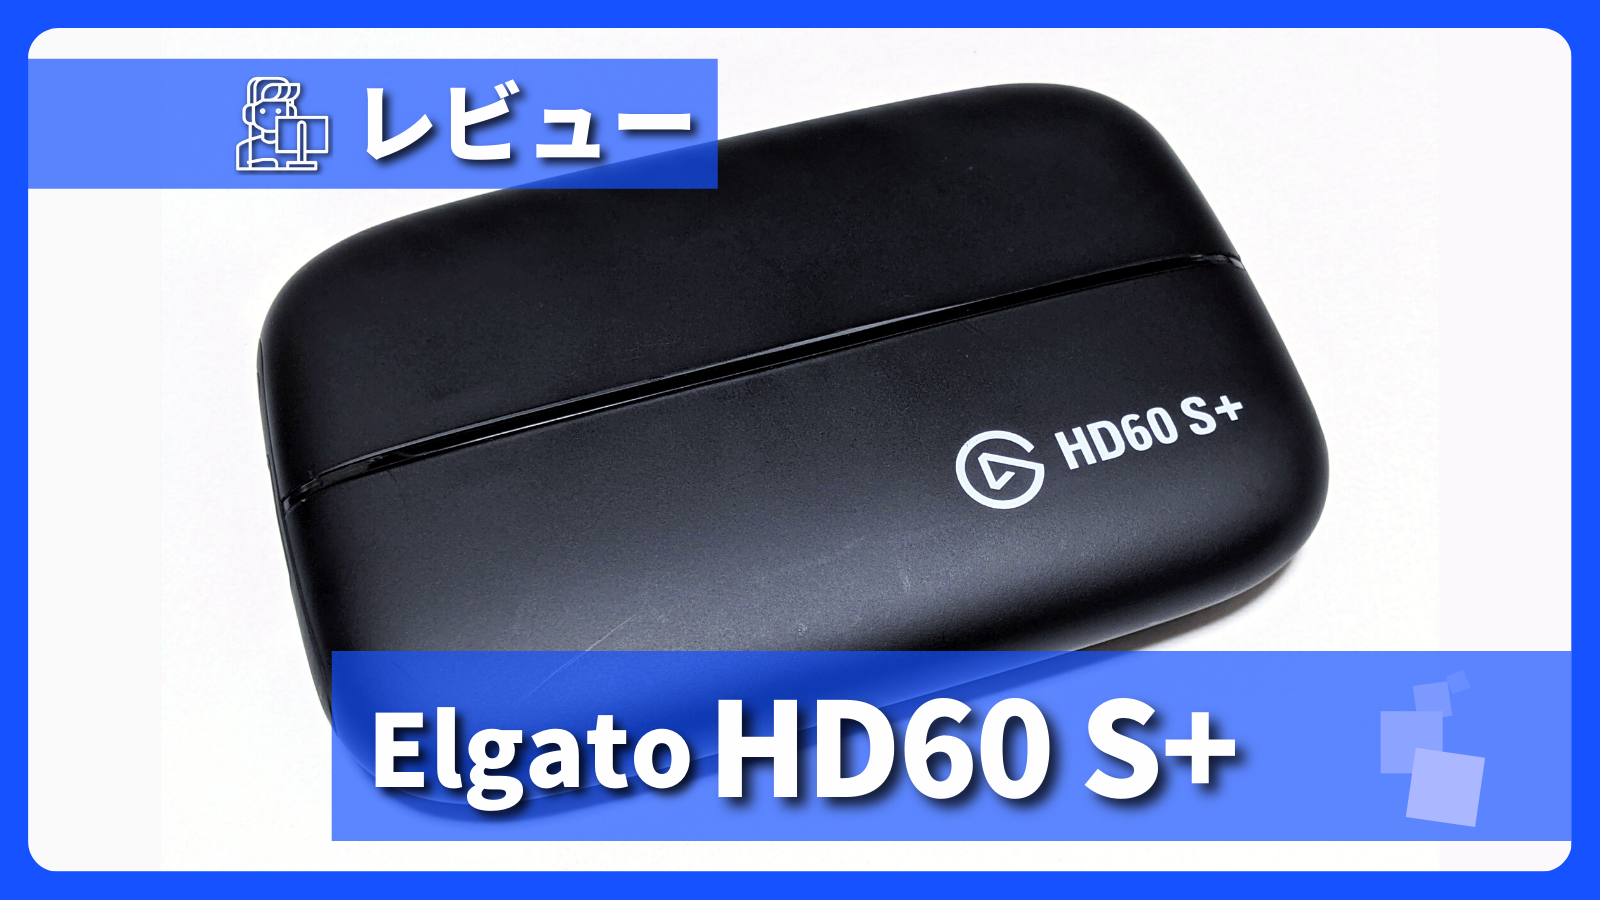 elgato(エルガト)4K60 S+ 外付けキャプチャーボード